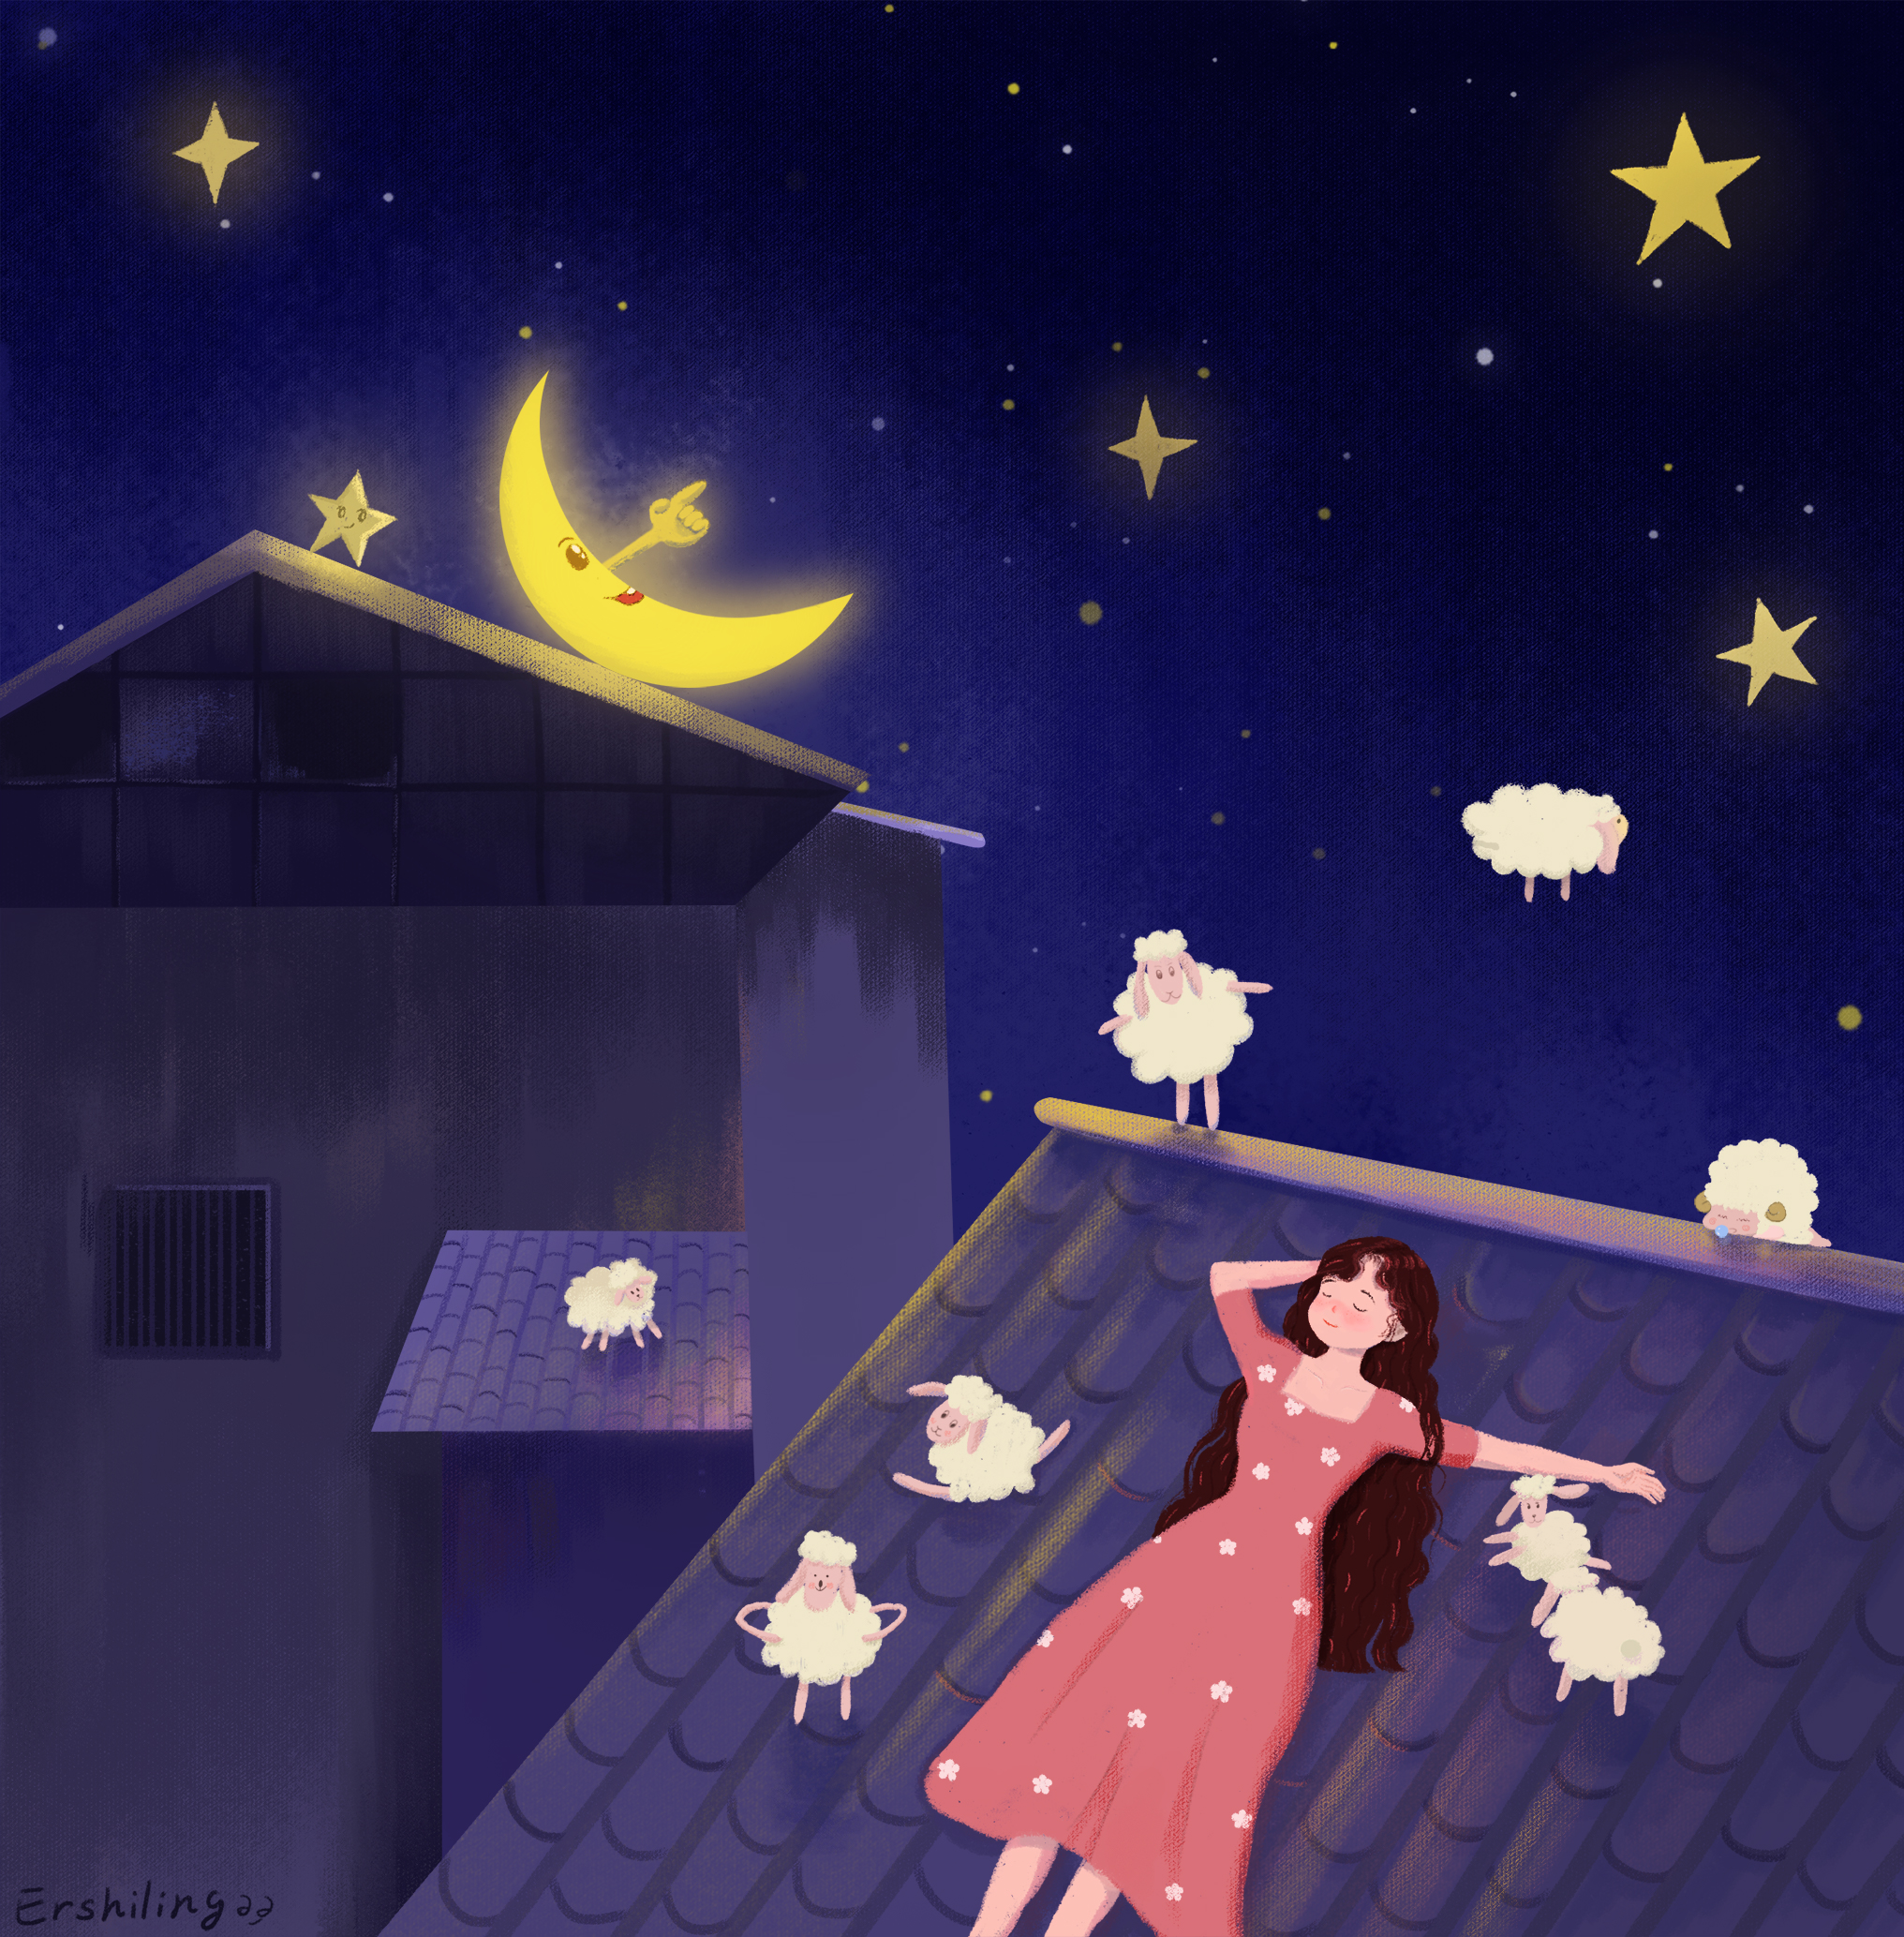 在想,我们睡不着的时候,会数羊;那月亮睡不着的时候,会数星星吗?